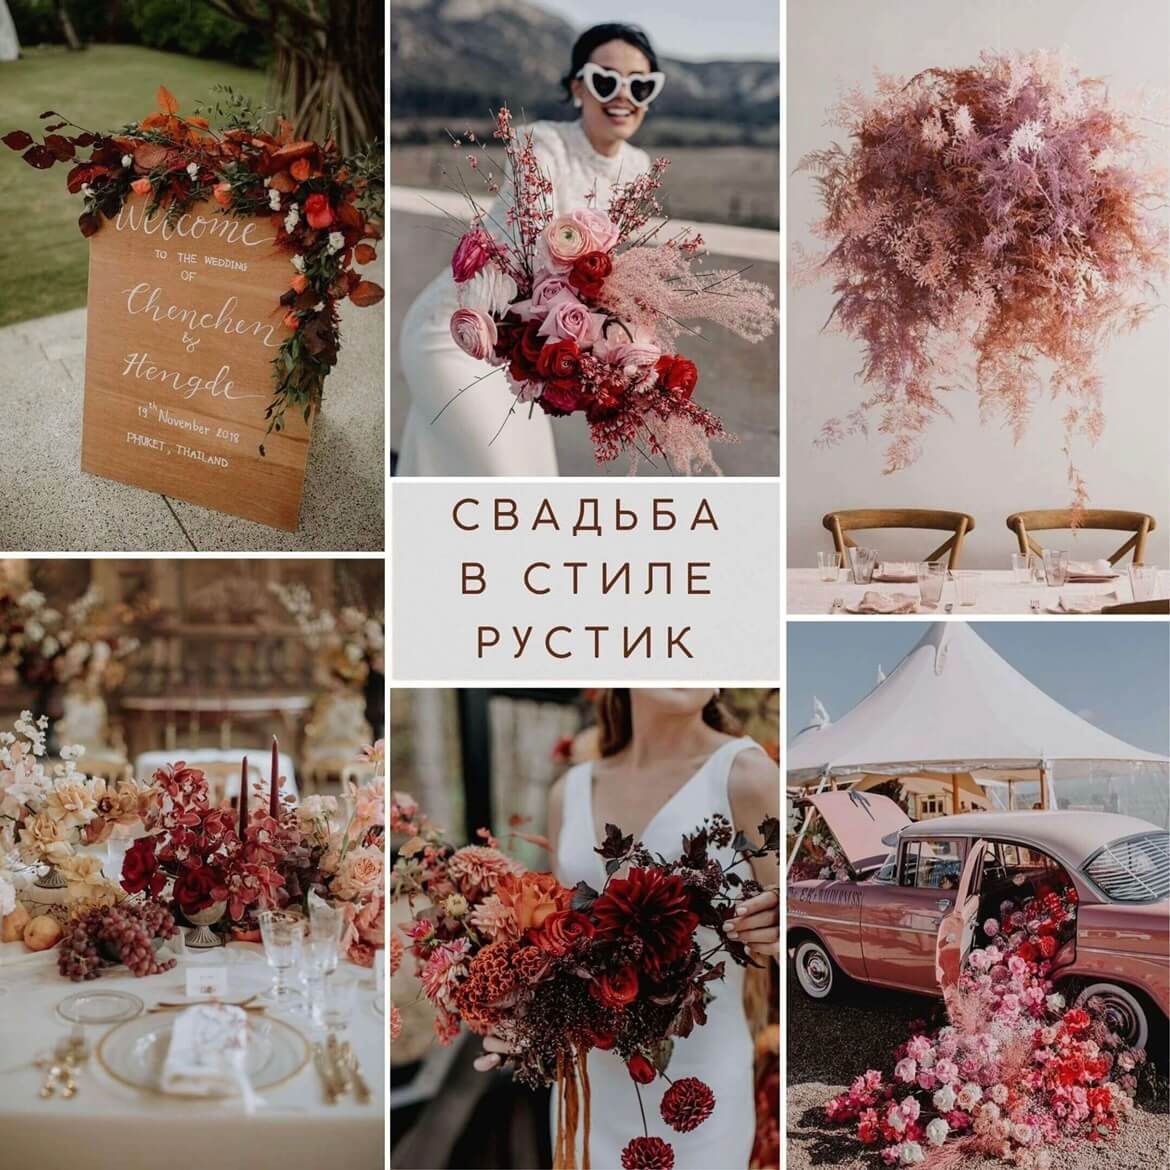 Осенняя свадьба в стиле рустик